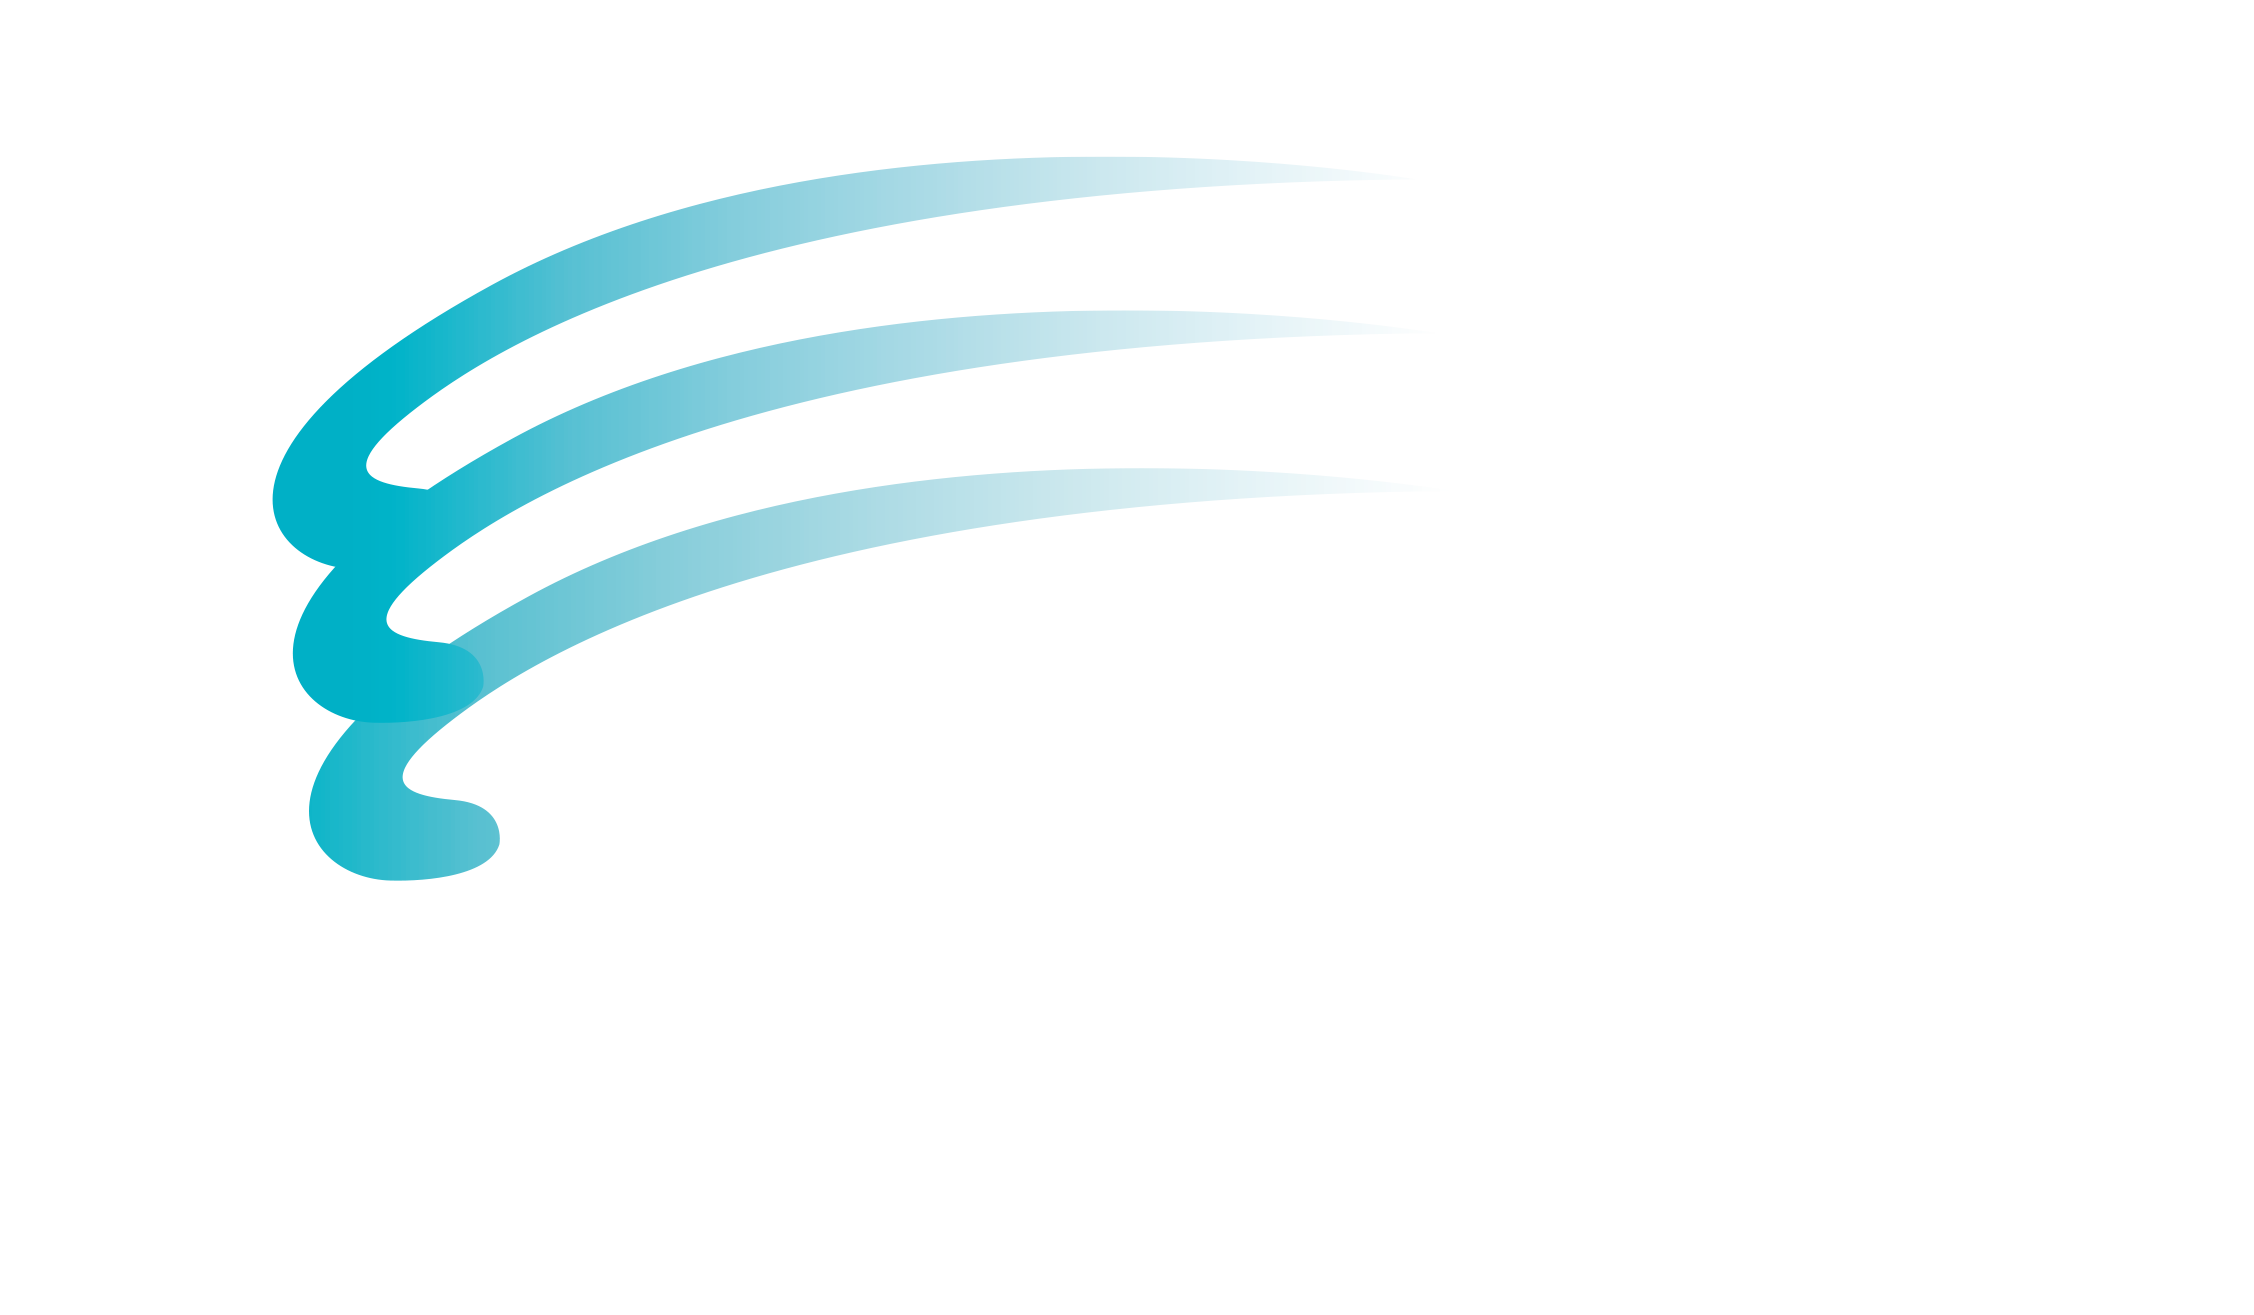 GMF